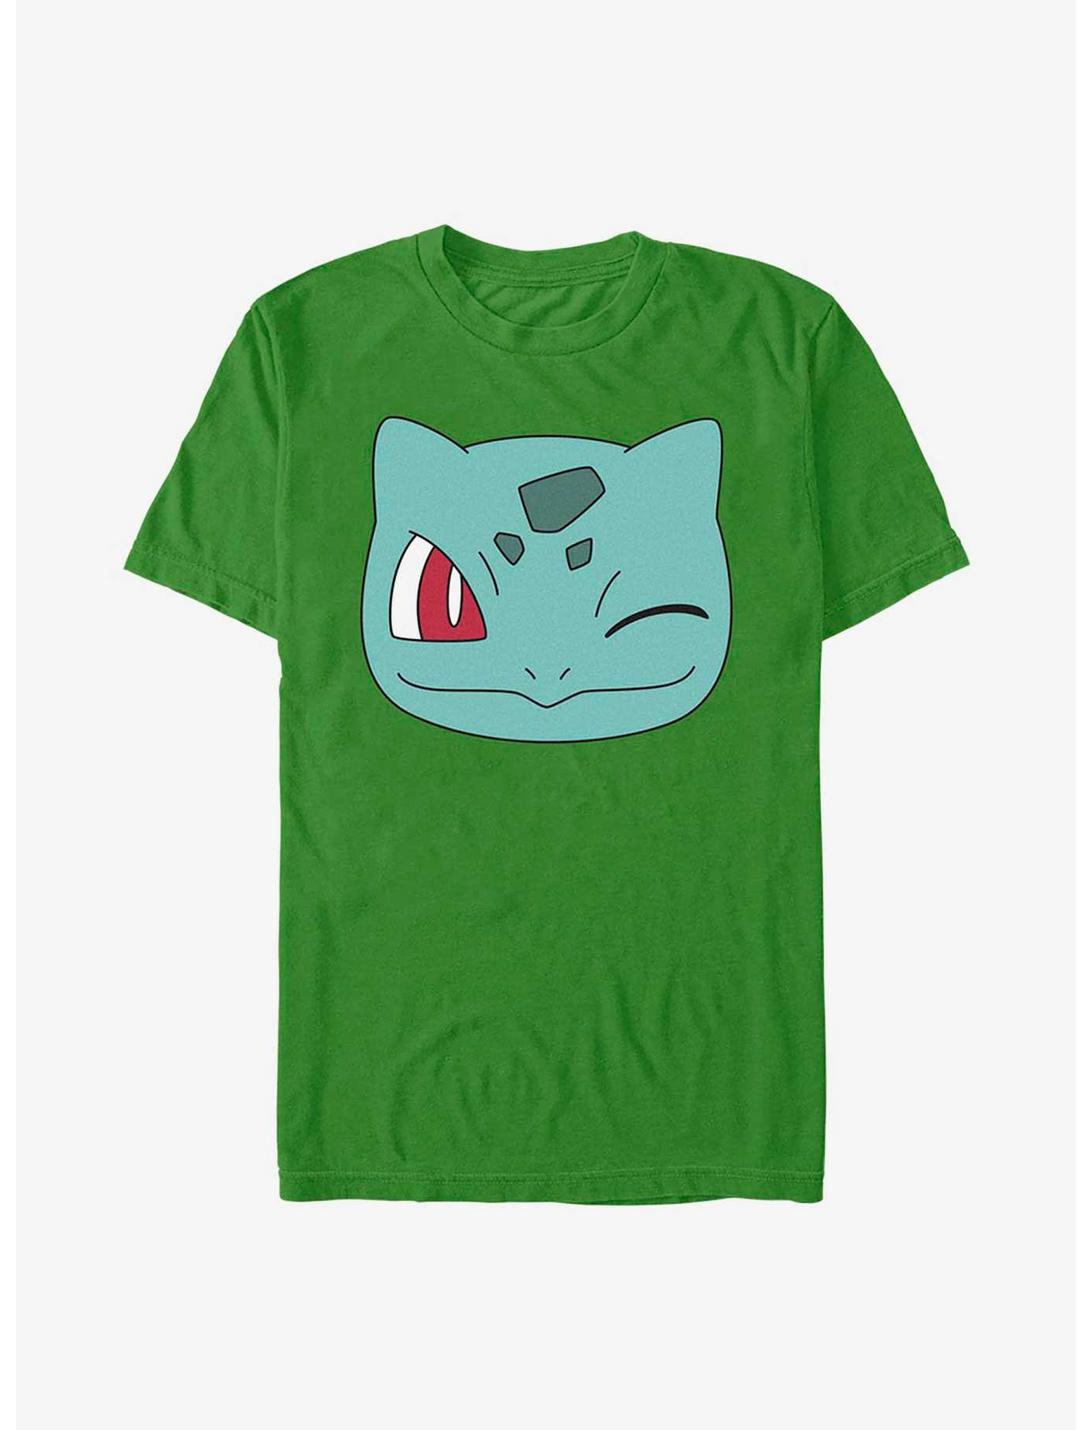 Pokemon Bulbasaur Face T-Shirt, KELLY, hi-res